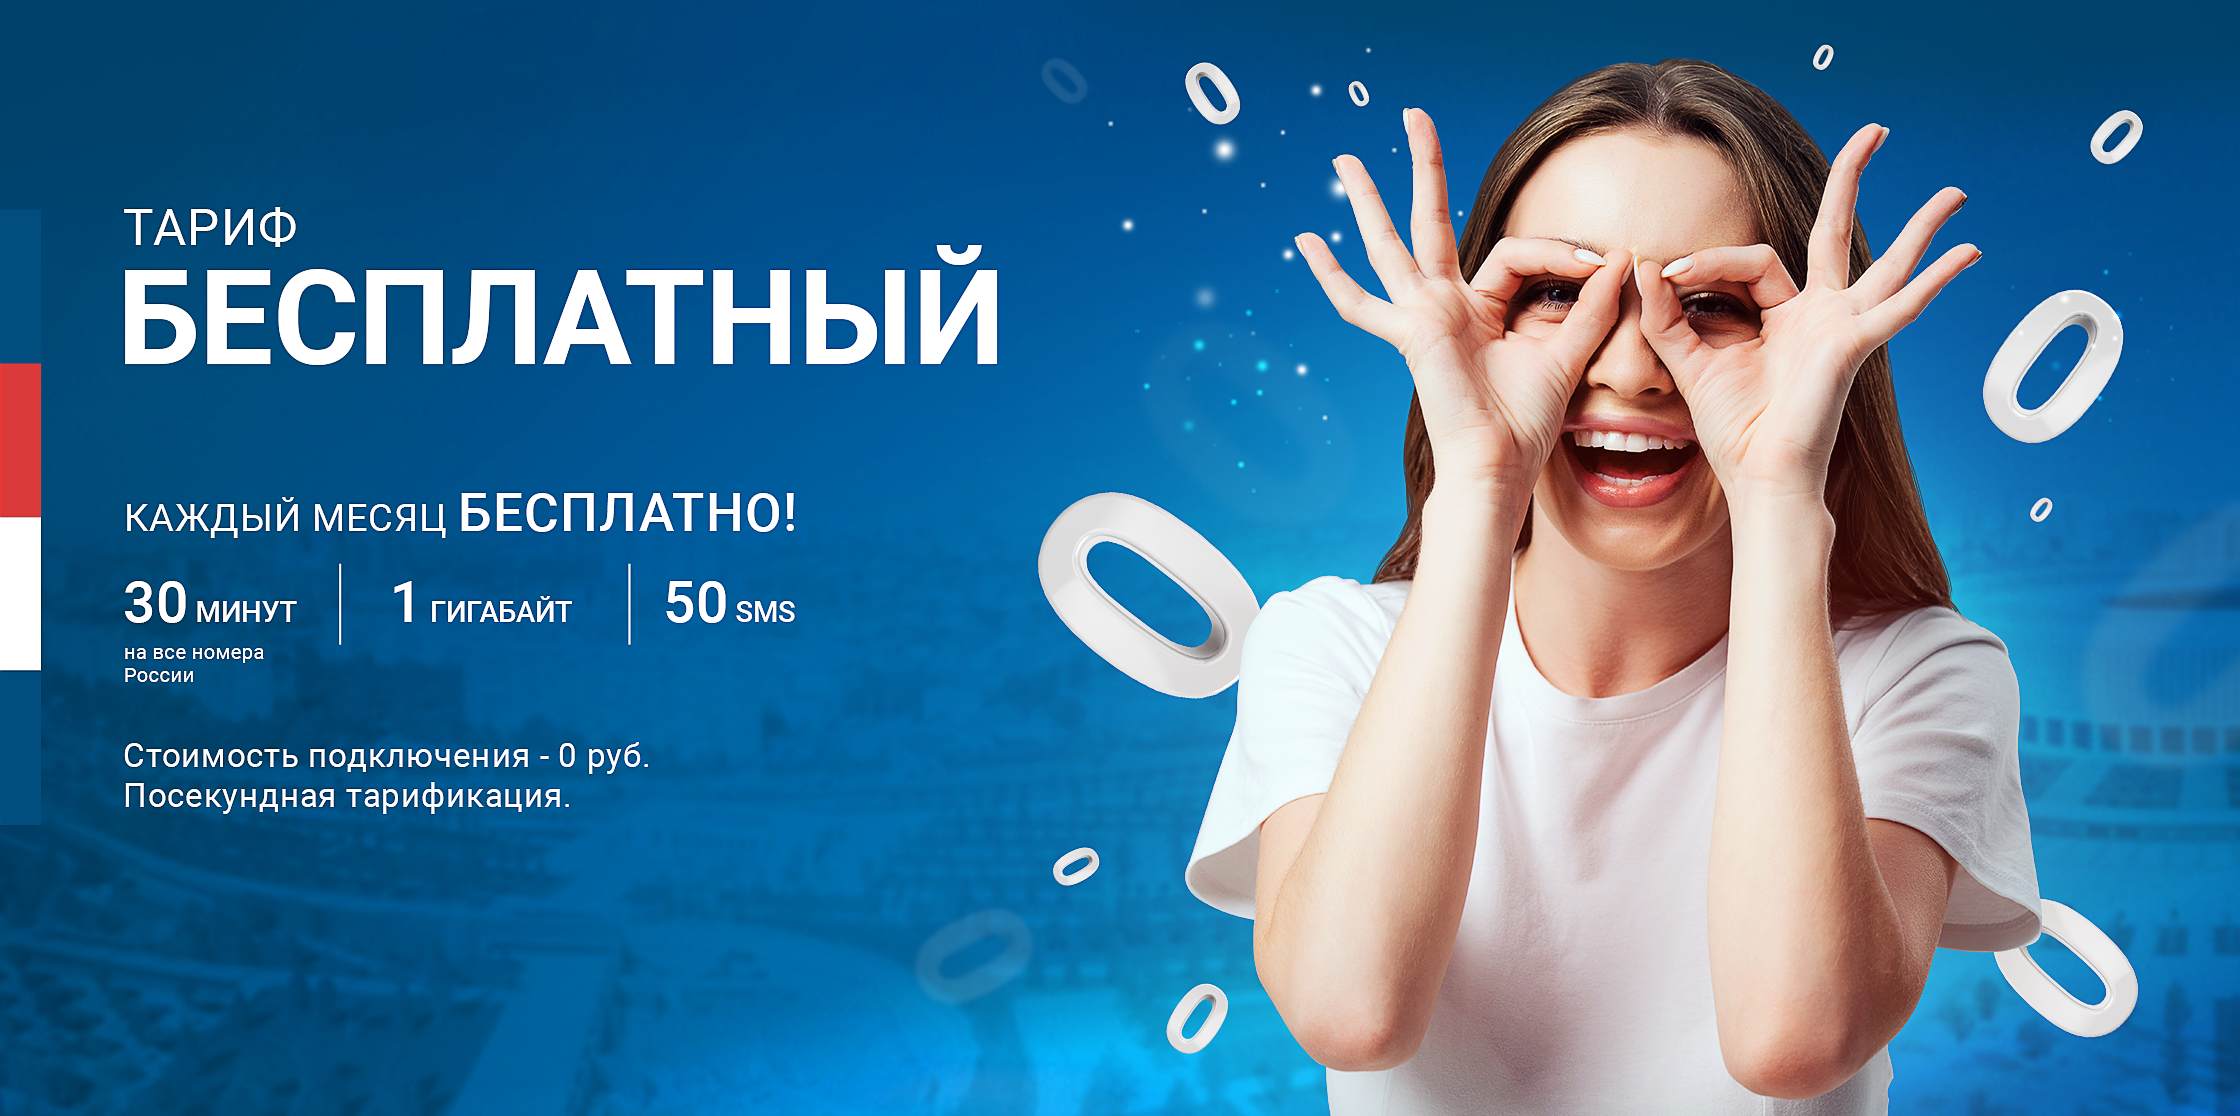 Тариф danycom «бесплатный»: подробное описание, как подключить | про операторов | все о сотовой связи в россии